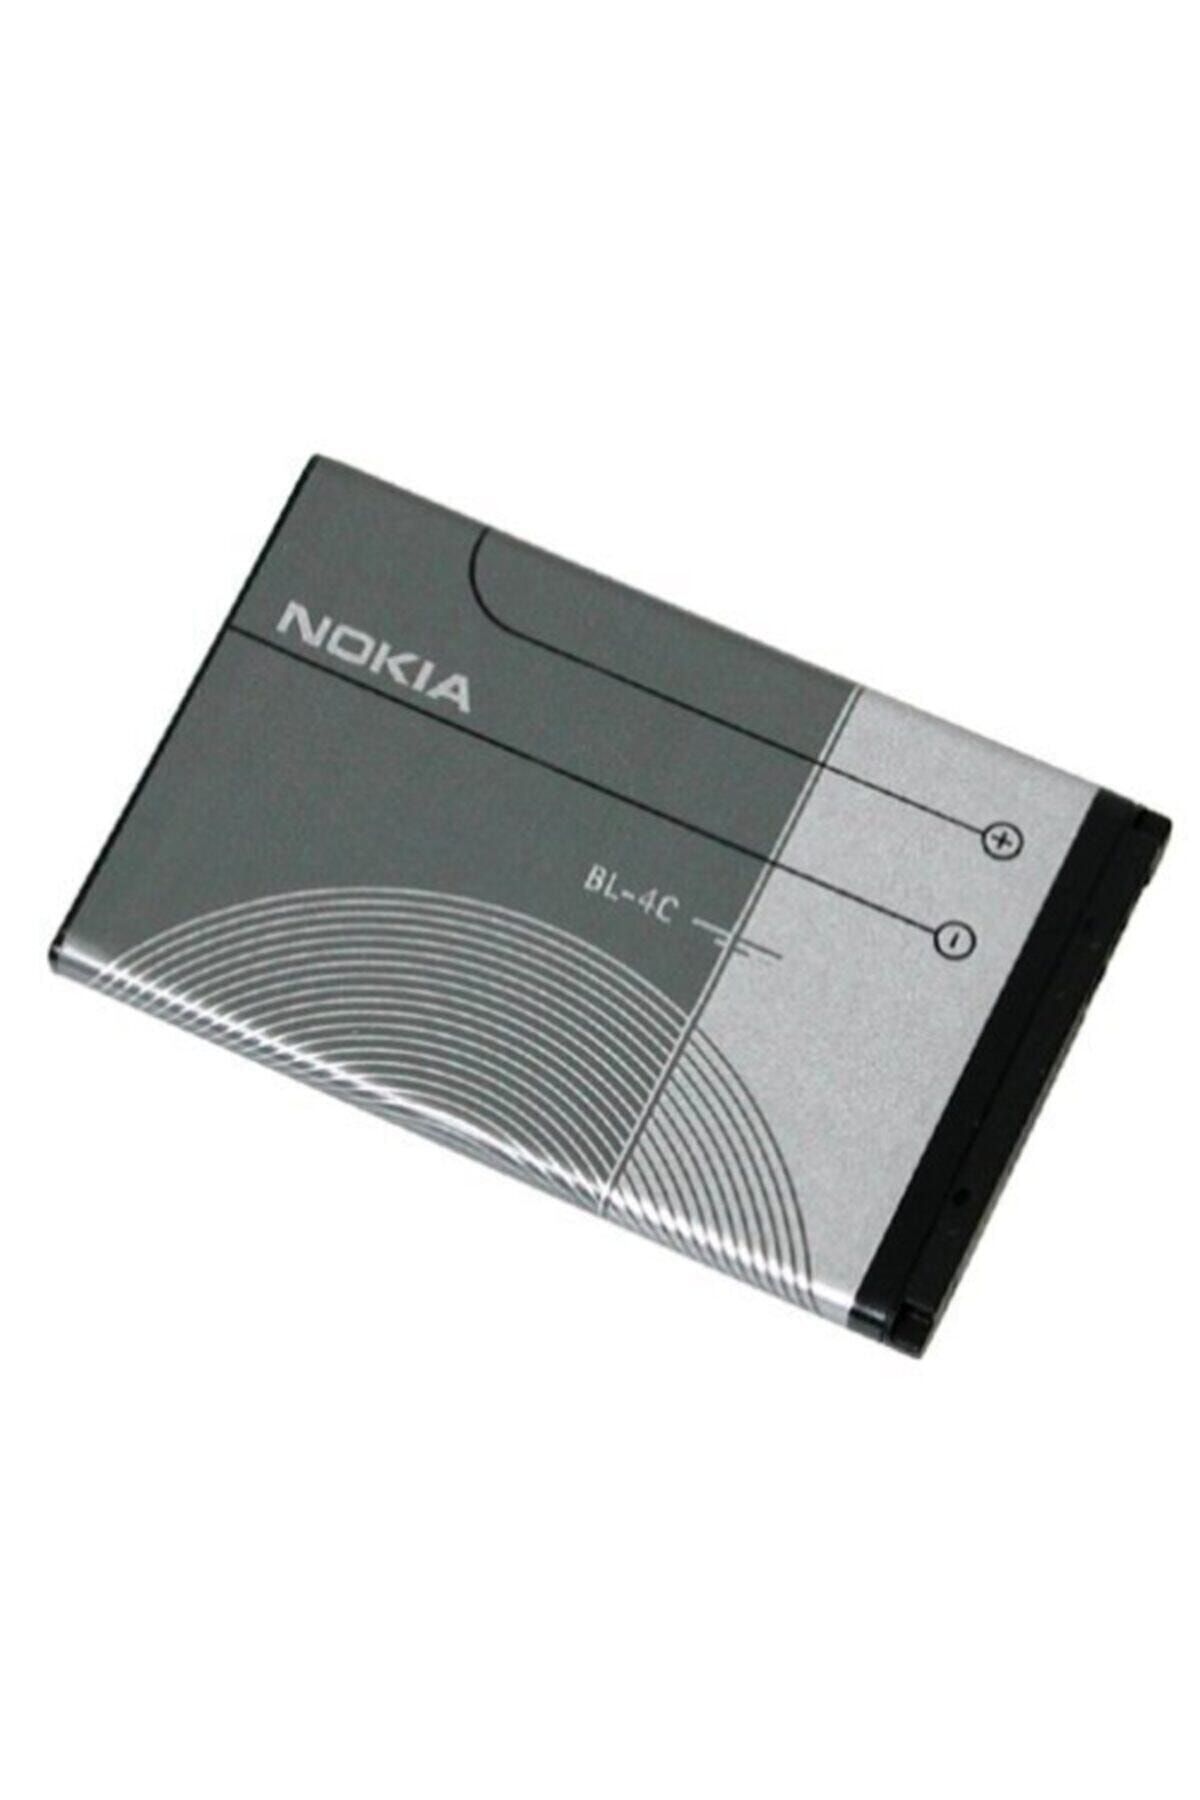 Nokia Bl 4c 6300 Orjinal Batarya Pil 2220 1203 6100 X2 Bl 4c Batarya Pil 890mah